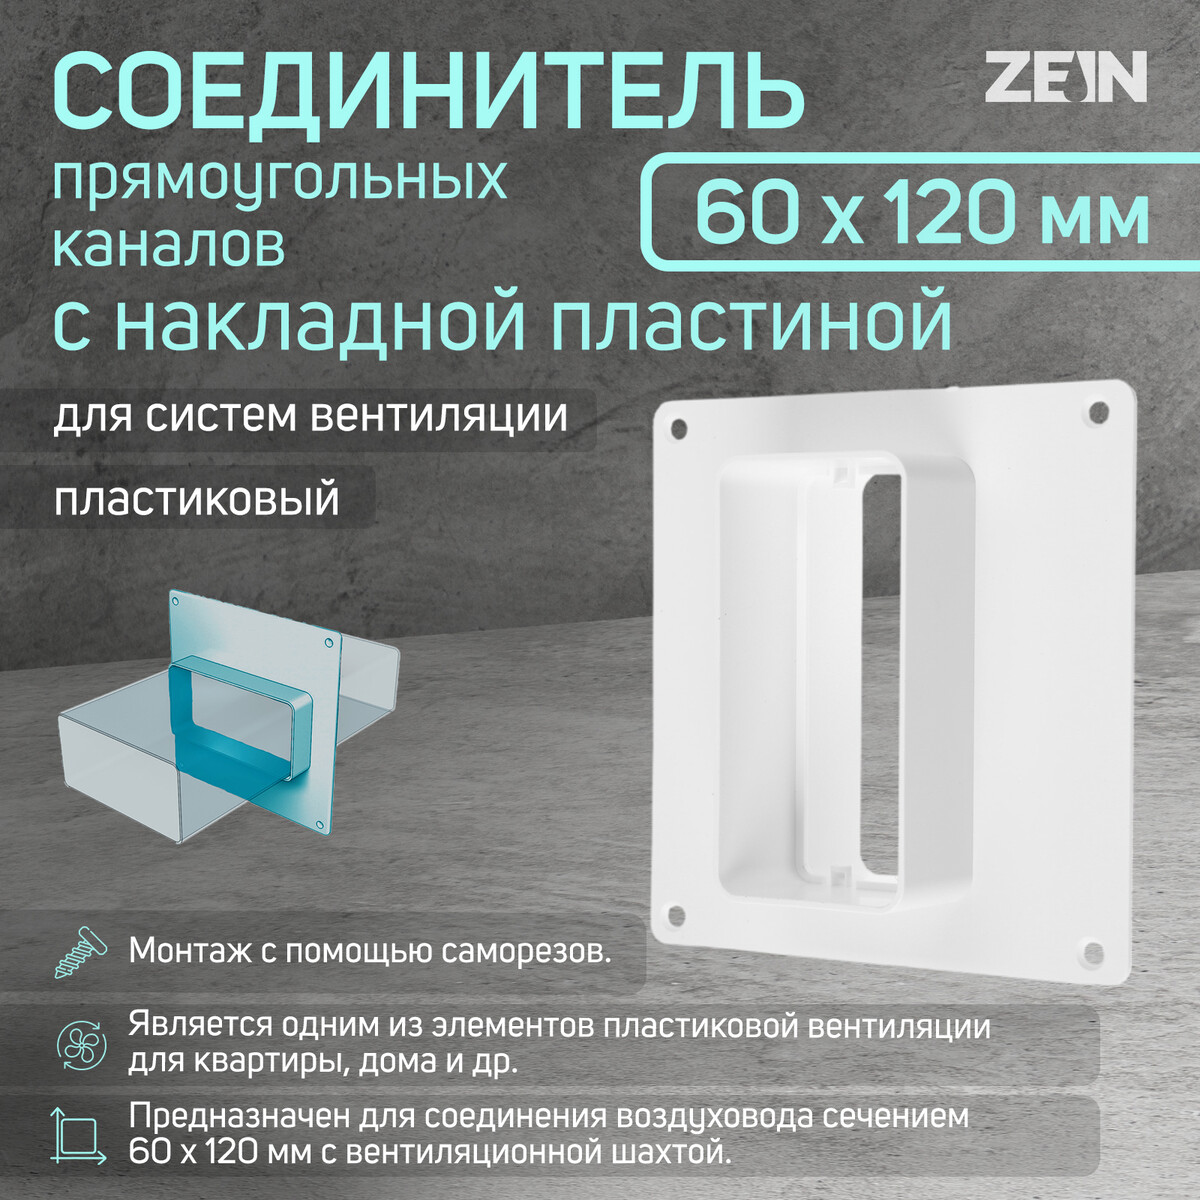 Соединитель вентиляционных каналов zein, 60 х 120 мм, с накладной пластиной